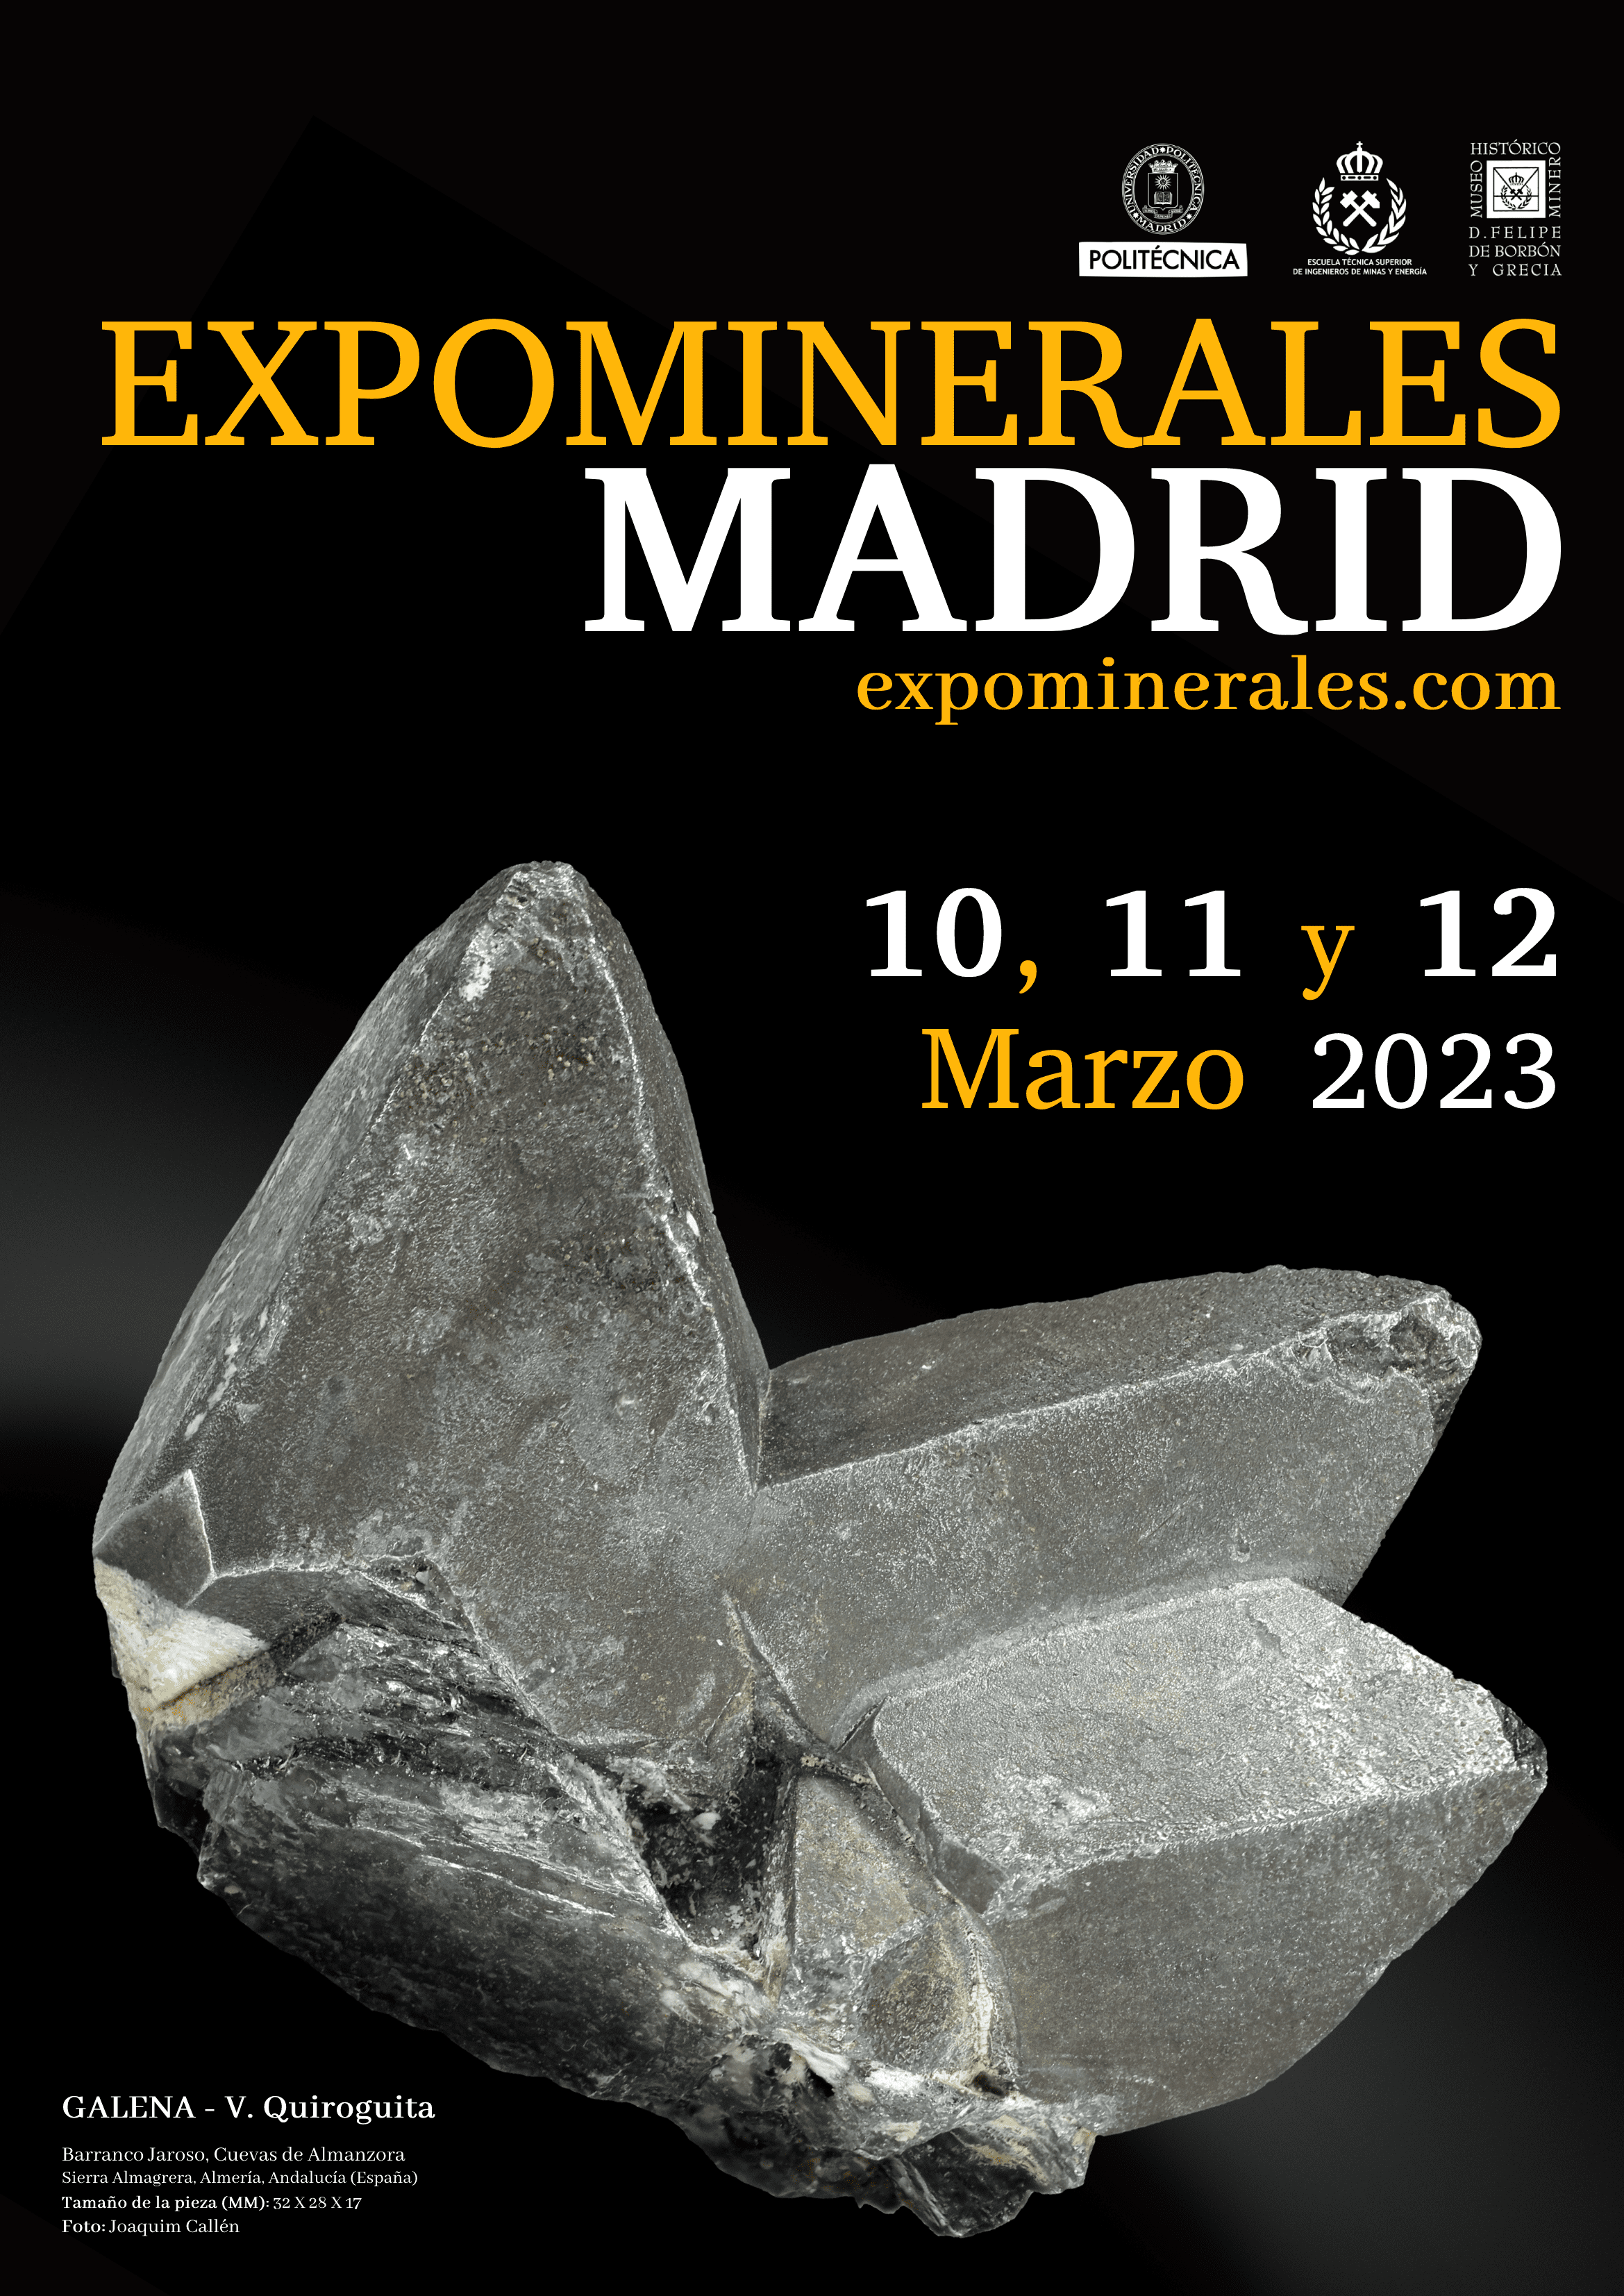 Madrid, capital de las Ciencias de la Tierra gracias a Expominerales Madrid 2023